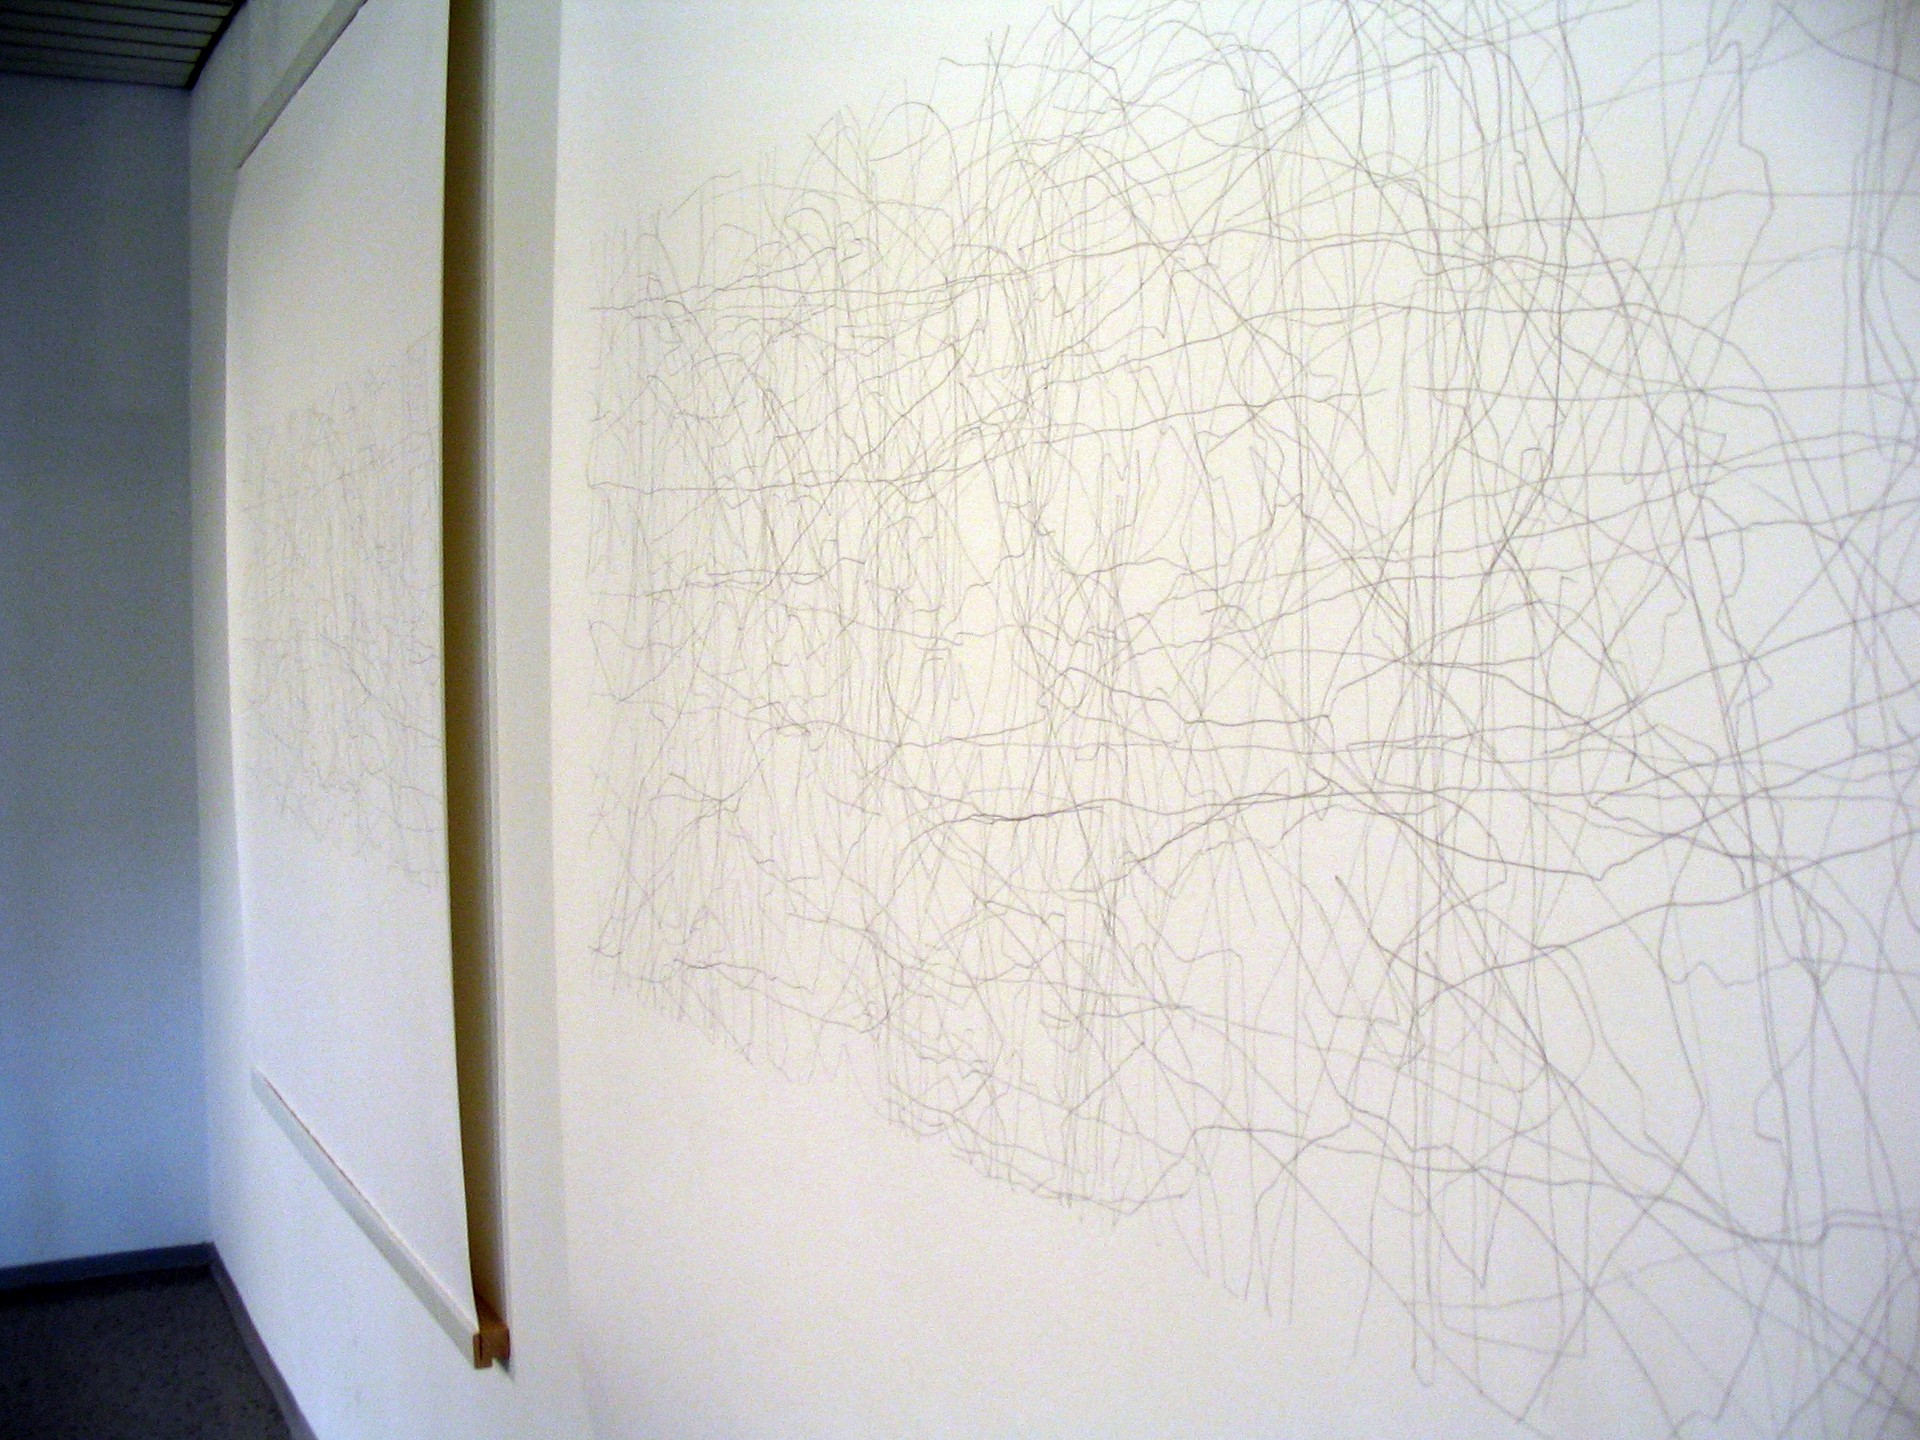 2005 Gallery Sinne, Helsinki, Finland